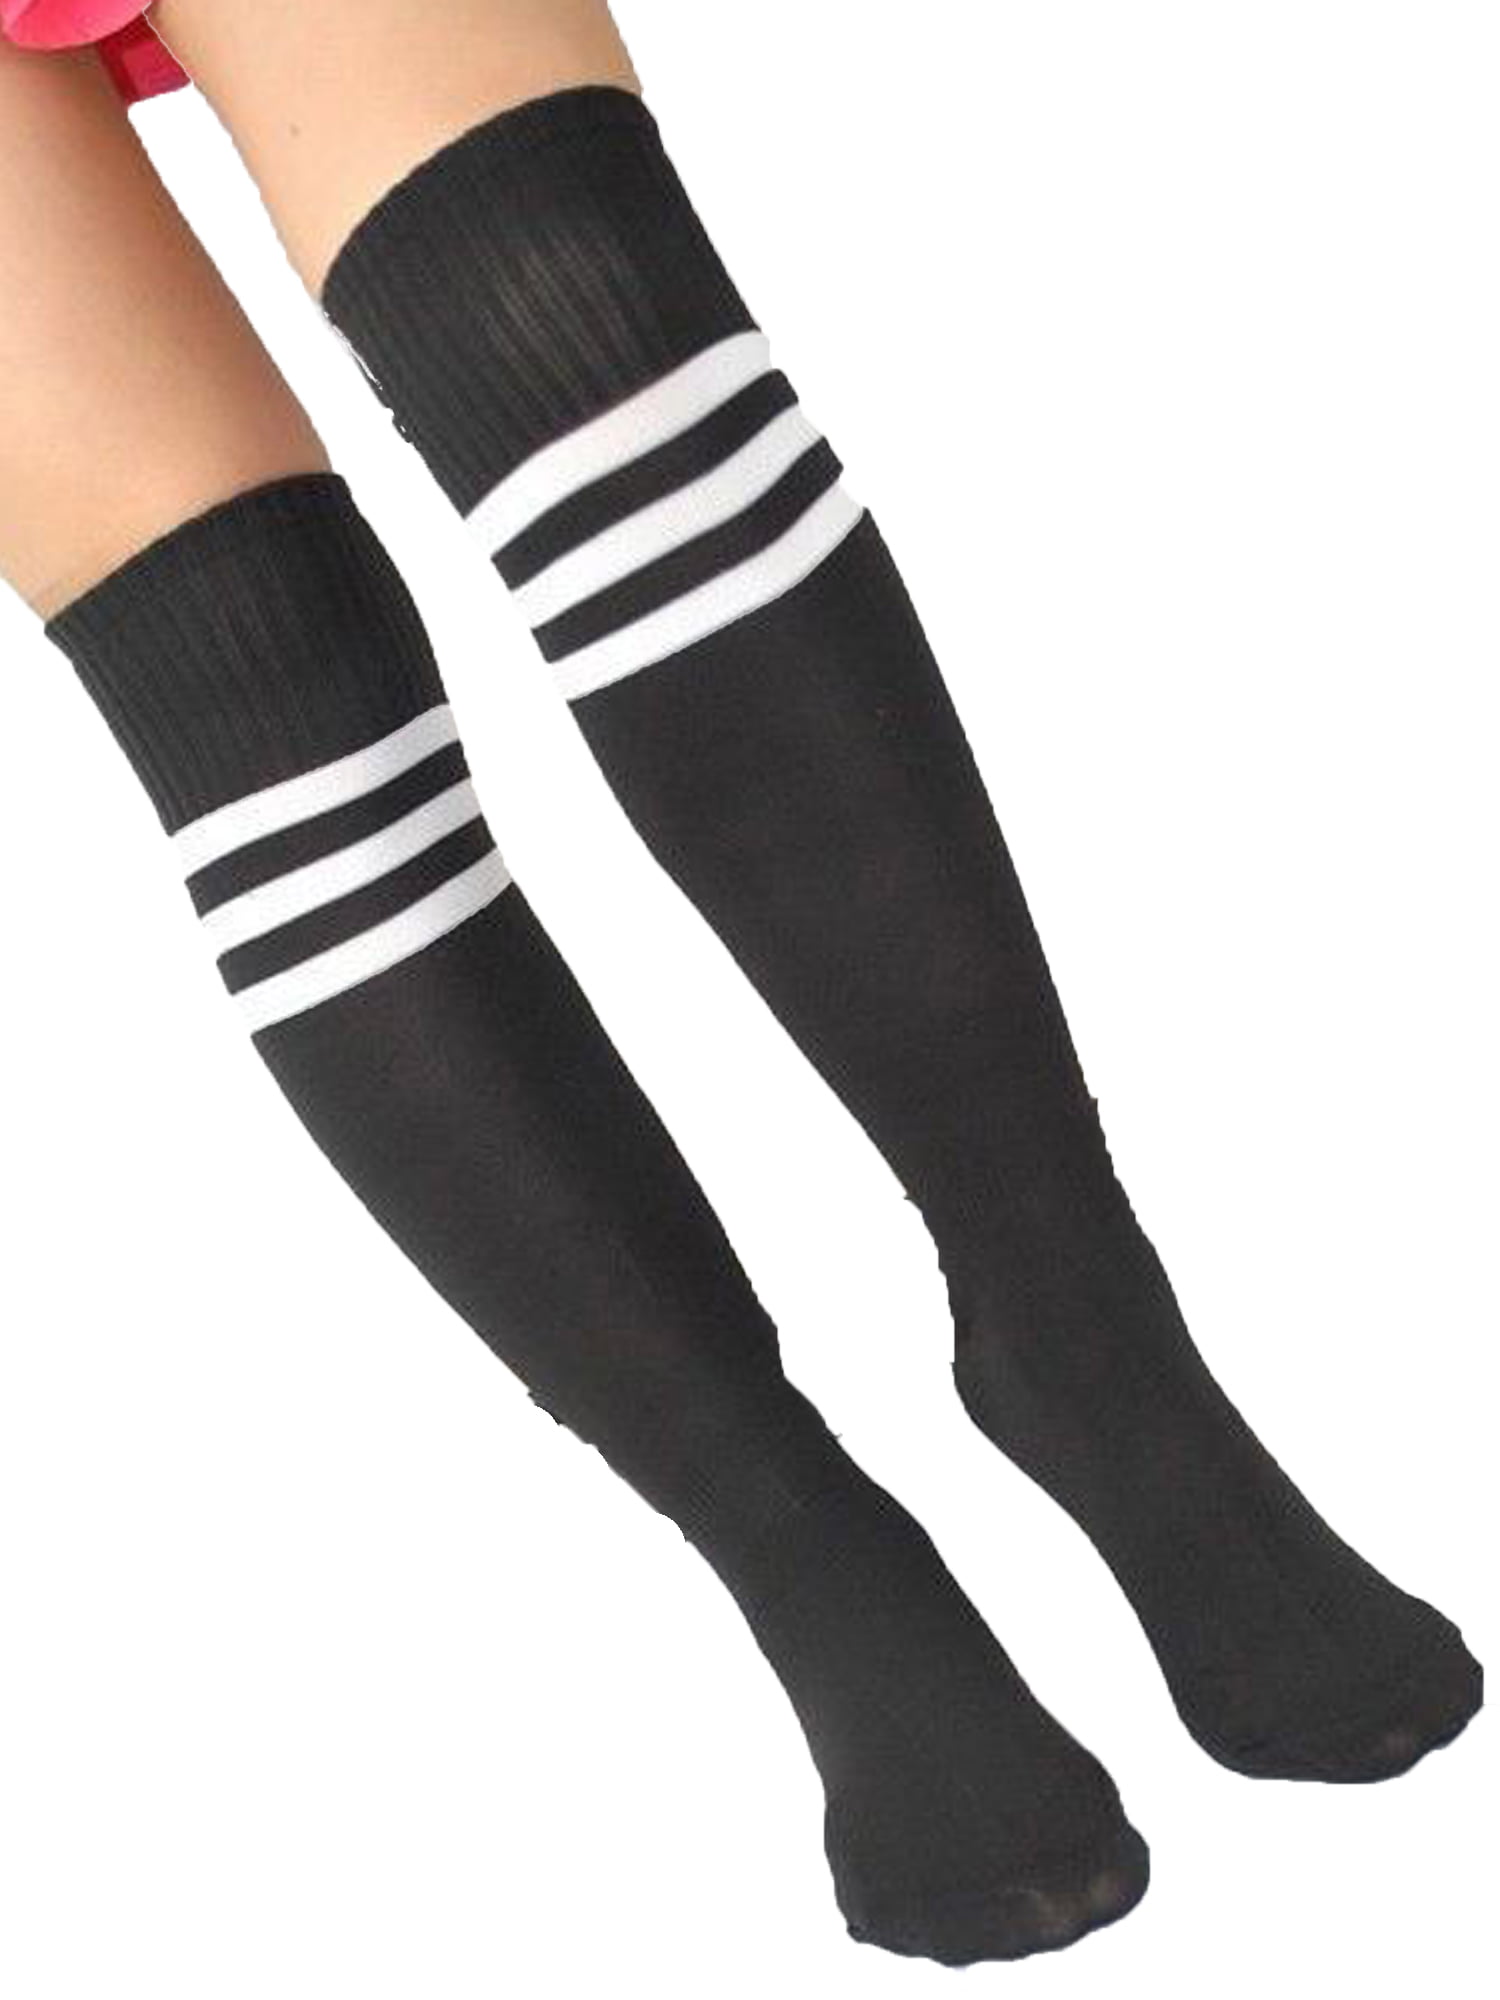 3 Men Women Sport Athletic Long Sock Over Knee Soccer Stripe Thigh High Stocking